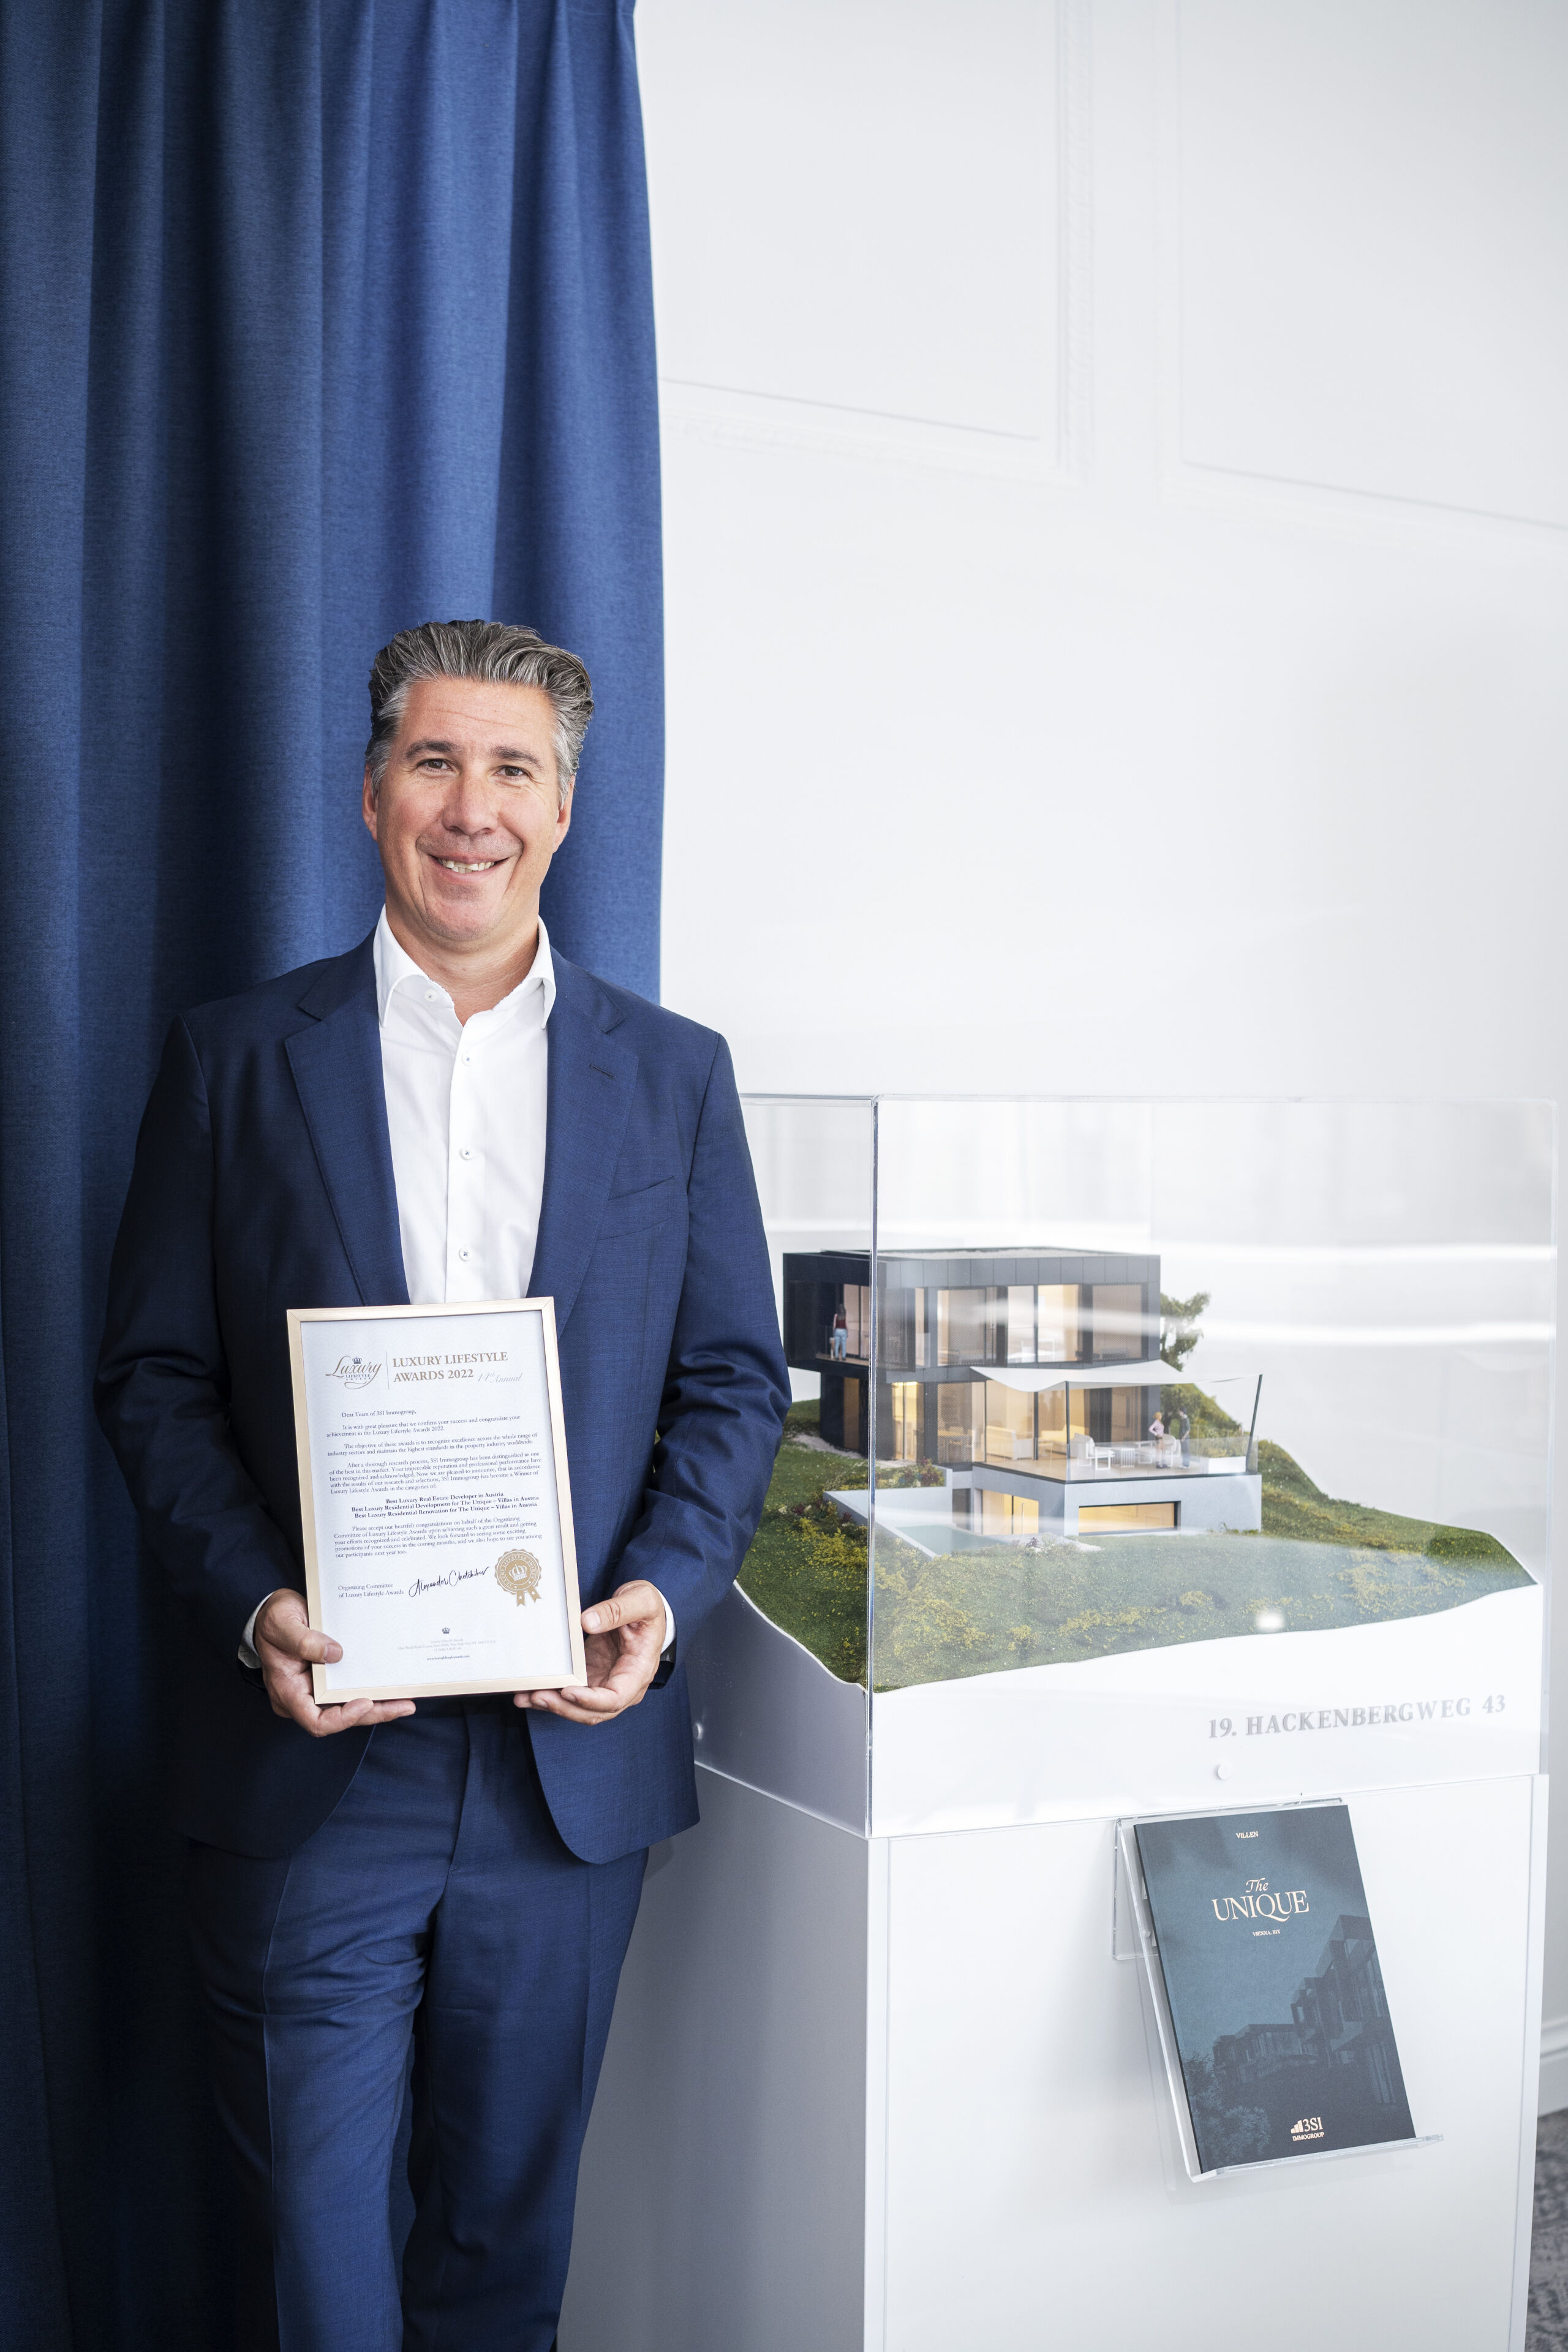 Ein Immobilienprojekt der Extraklasse: Für das Villen-Projekt „The Unique“ am Döblinger Hackenberg wurde die 3SI Immogroup heuer mit dem Luxury Lifestyle Award prämiert. (© 3SI Immogroup)